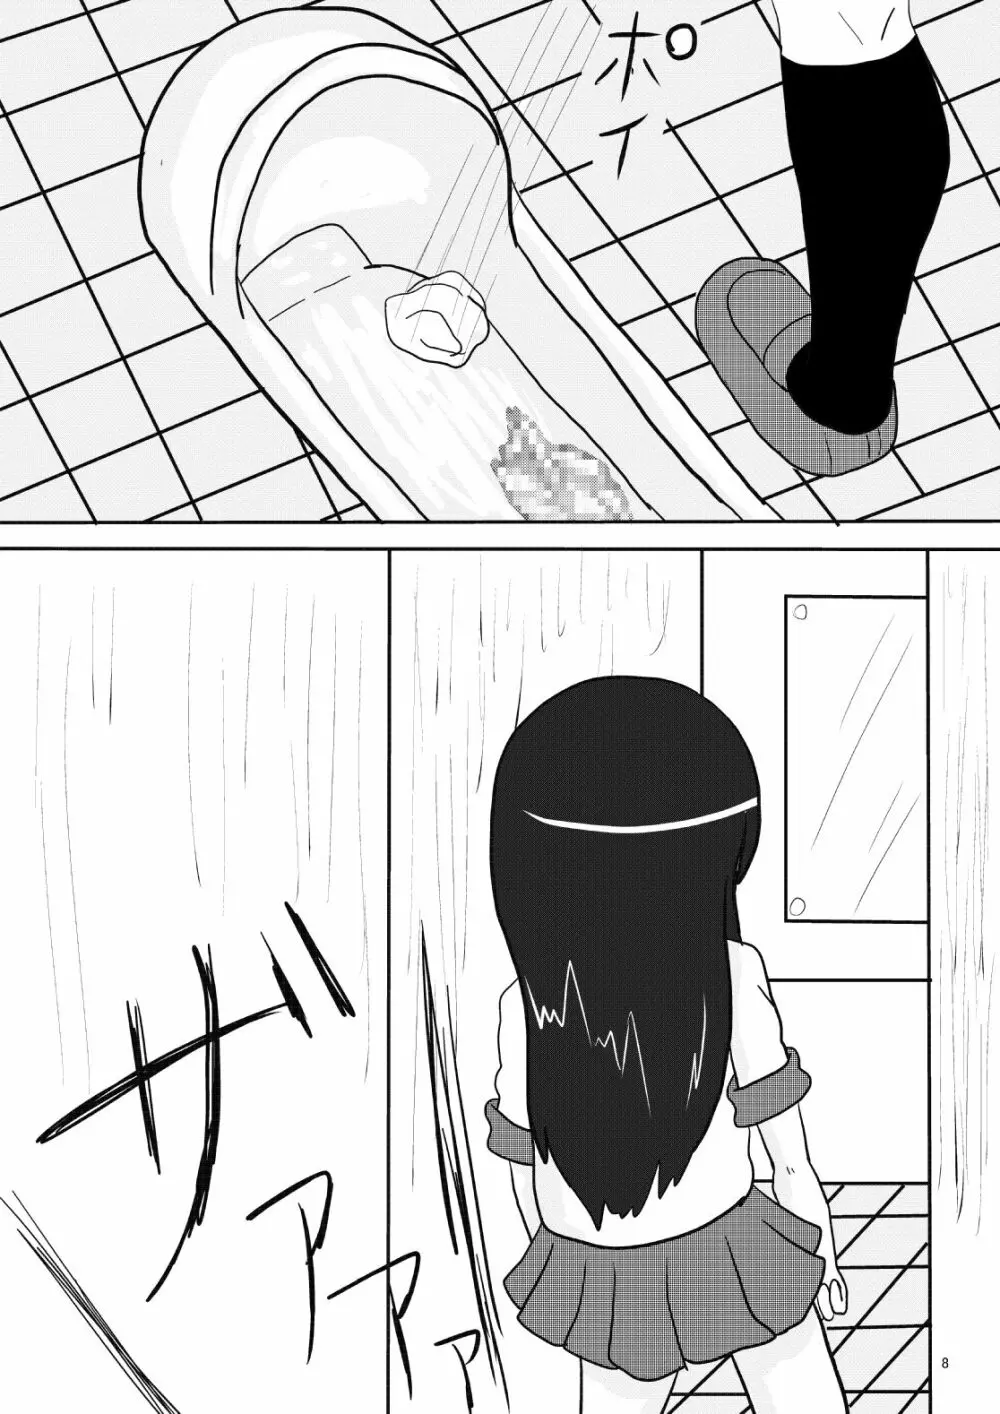 俺妹のあやせ桐乃の排泄漫画です - page8